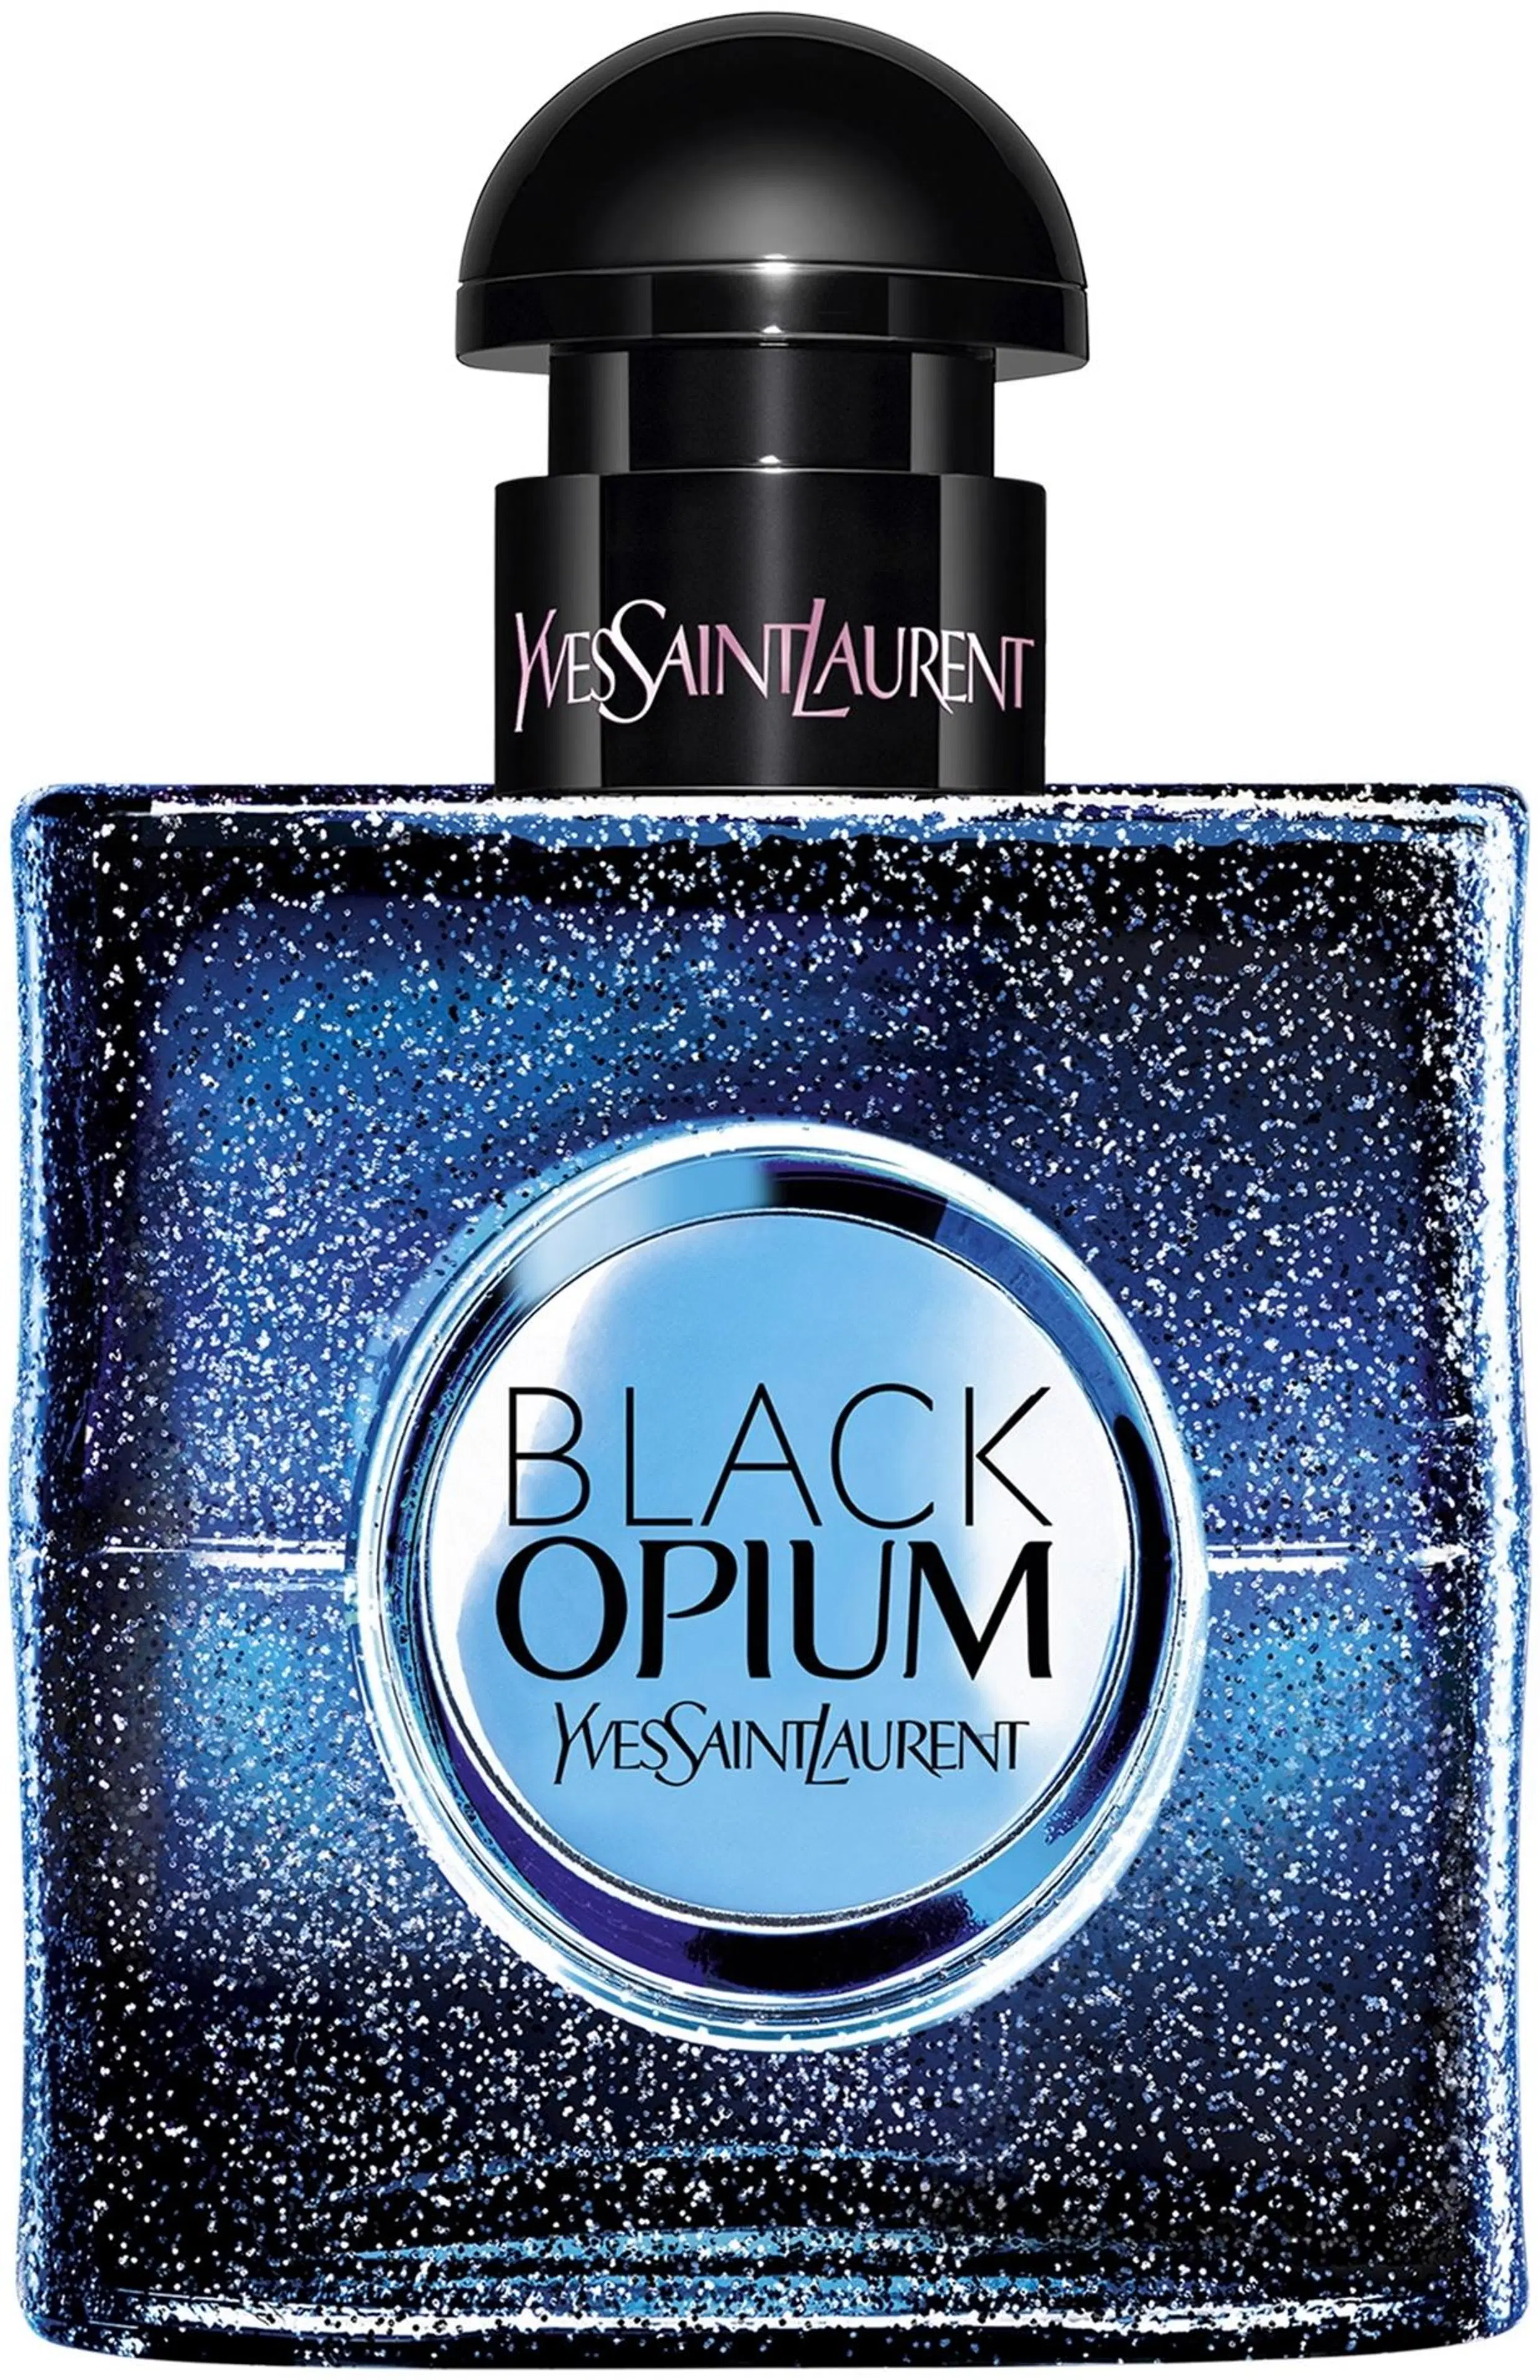 Yves Saint Laurent Black Opium Eau de Parfum Intense tuoksu 30 ml